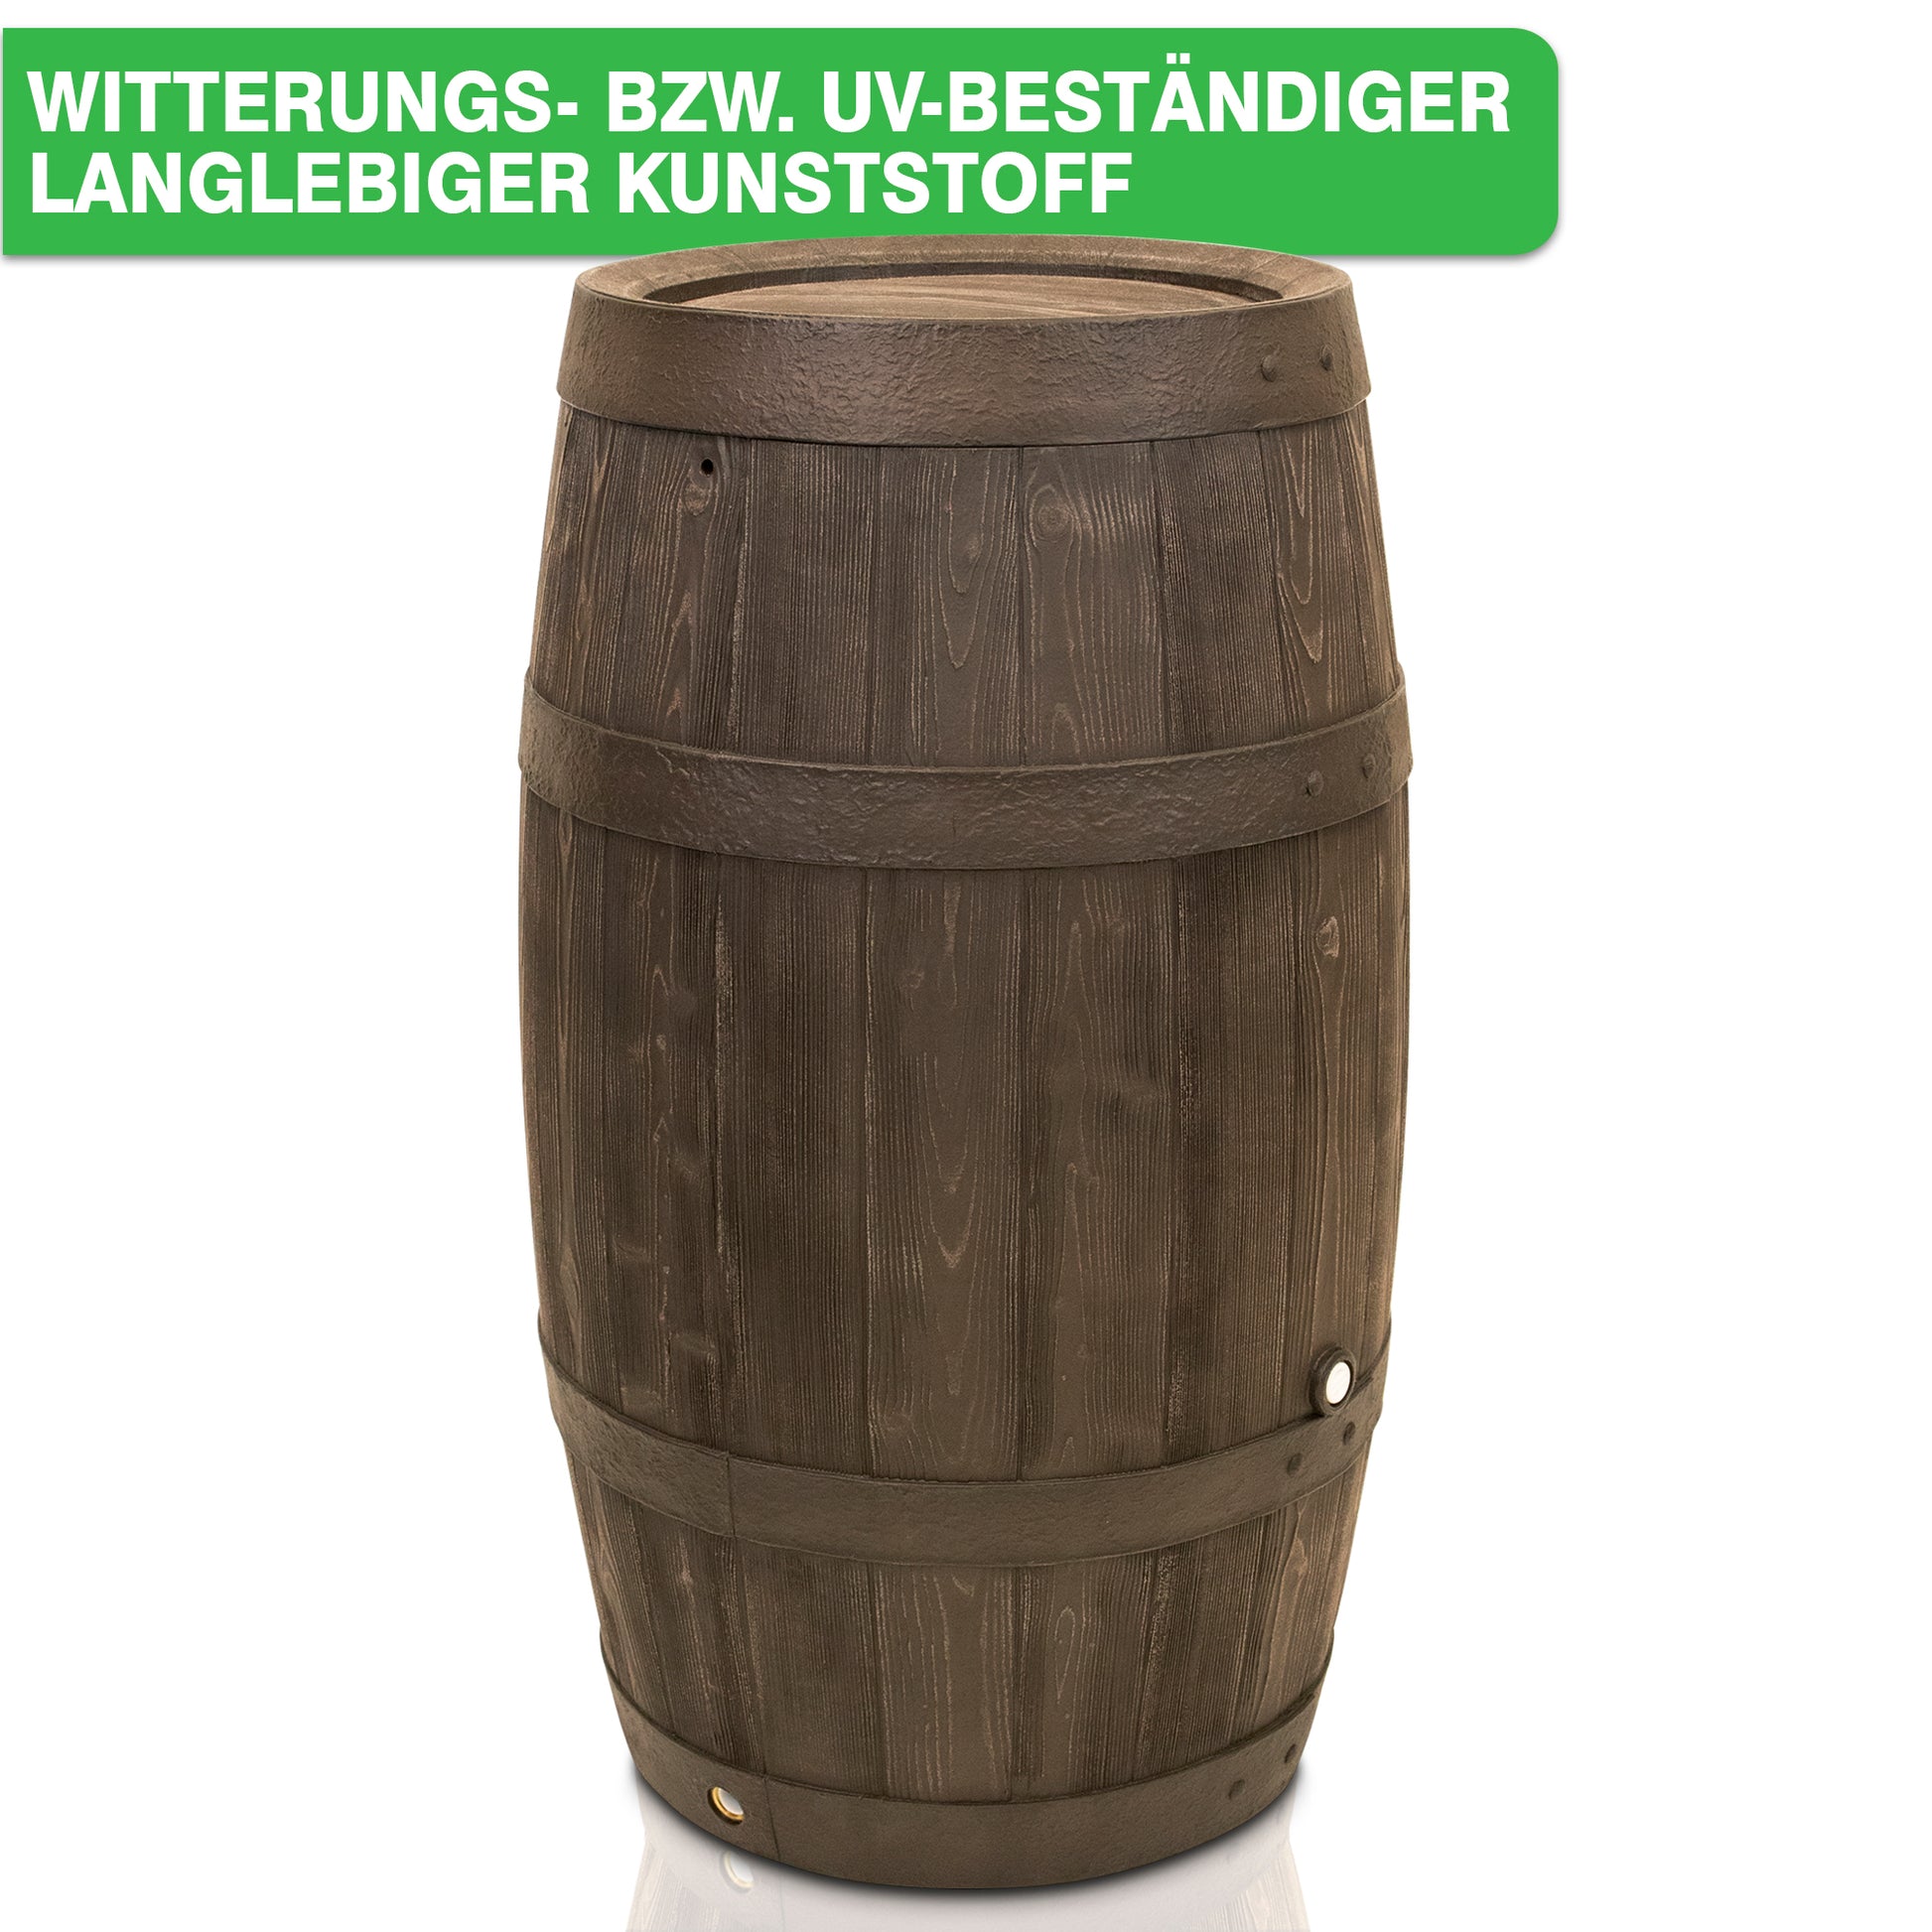 Eine YourCasa Regentonne 250 Liter [Timber] mit Metallgewinde und Deckel, ideal zum Sammeln von Regenwasser.